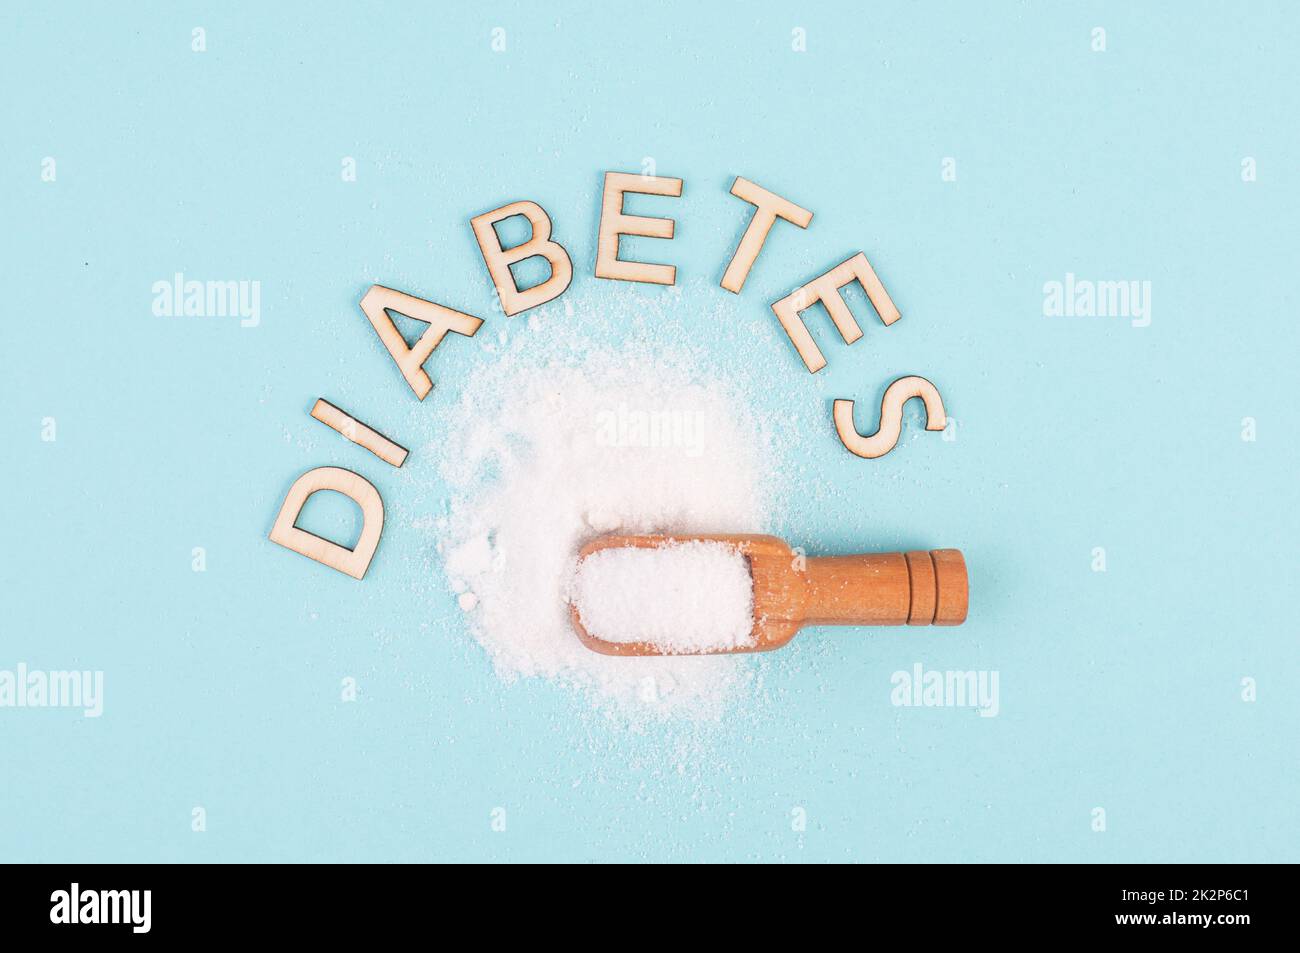 Schaufel mit weißem raffiniertem Zucker, gesundheitliche Probleme durch Diabetes, Insulin resistent, ungesunde Lebensmittel, sucht nach Süßigkeiten Stockfoto